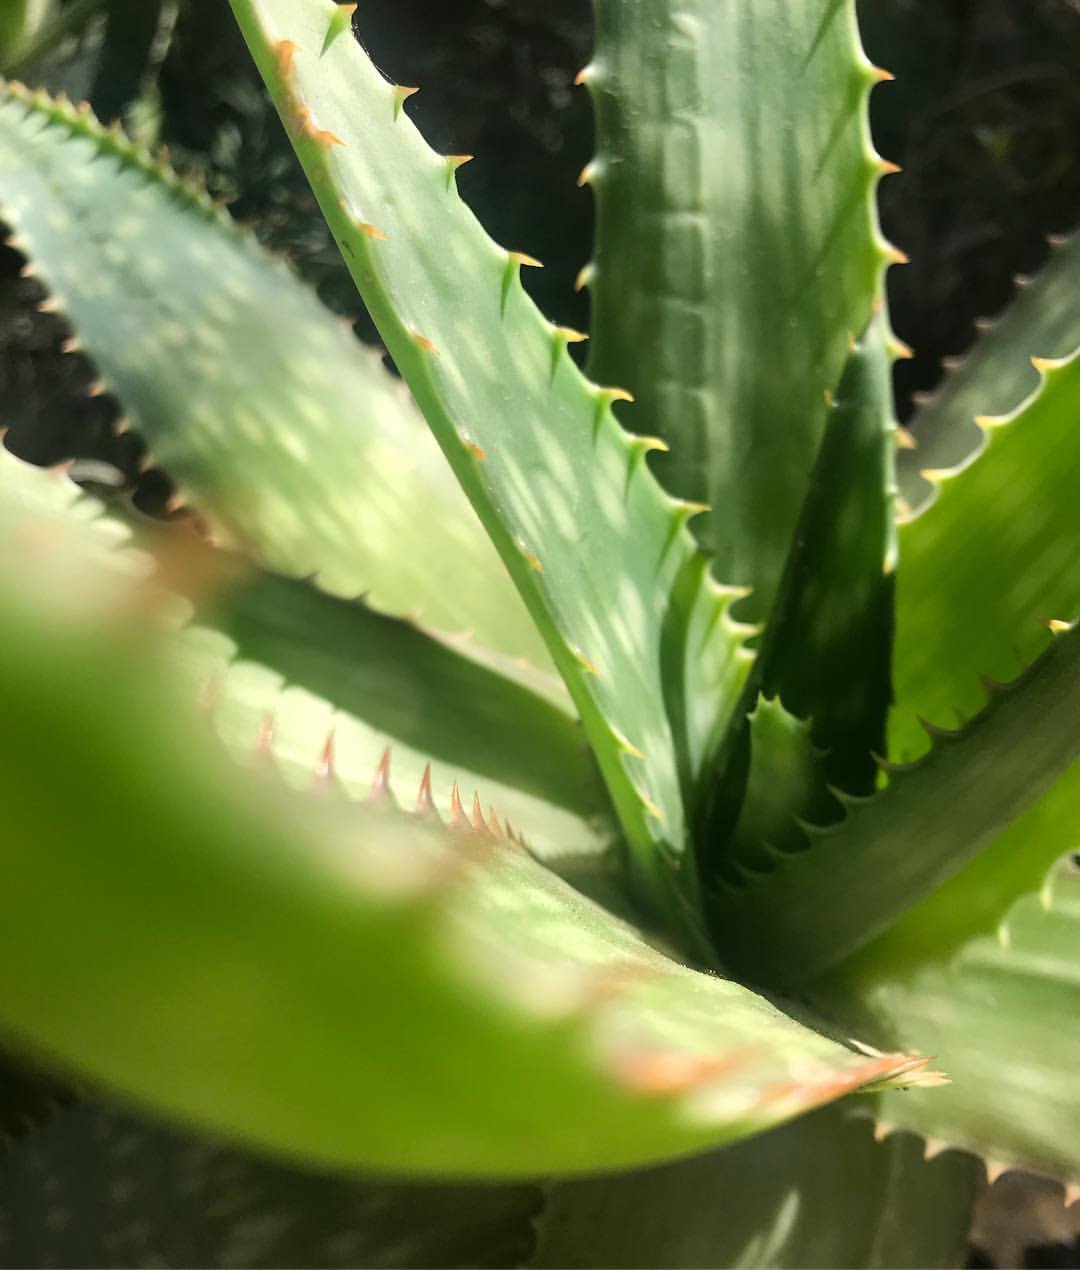 11 Common Problems With Aloe Vera Plants